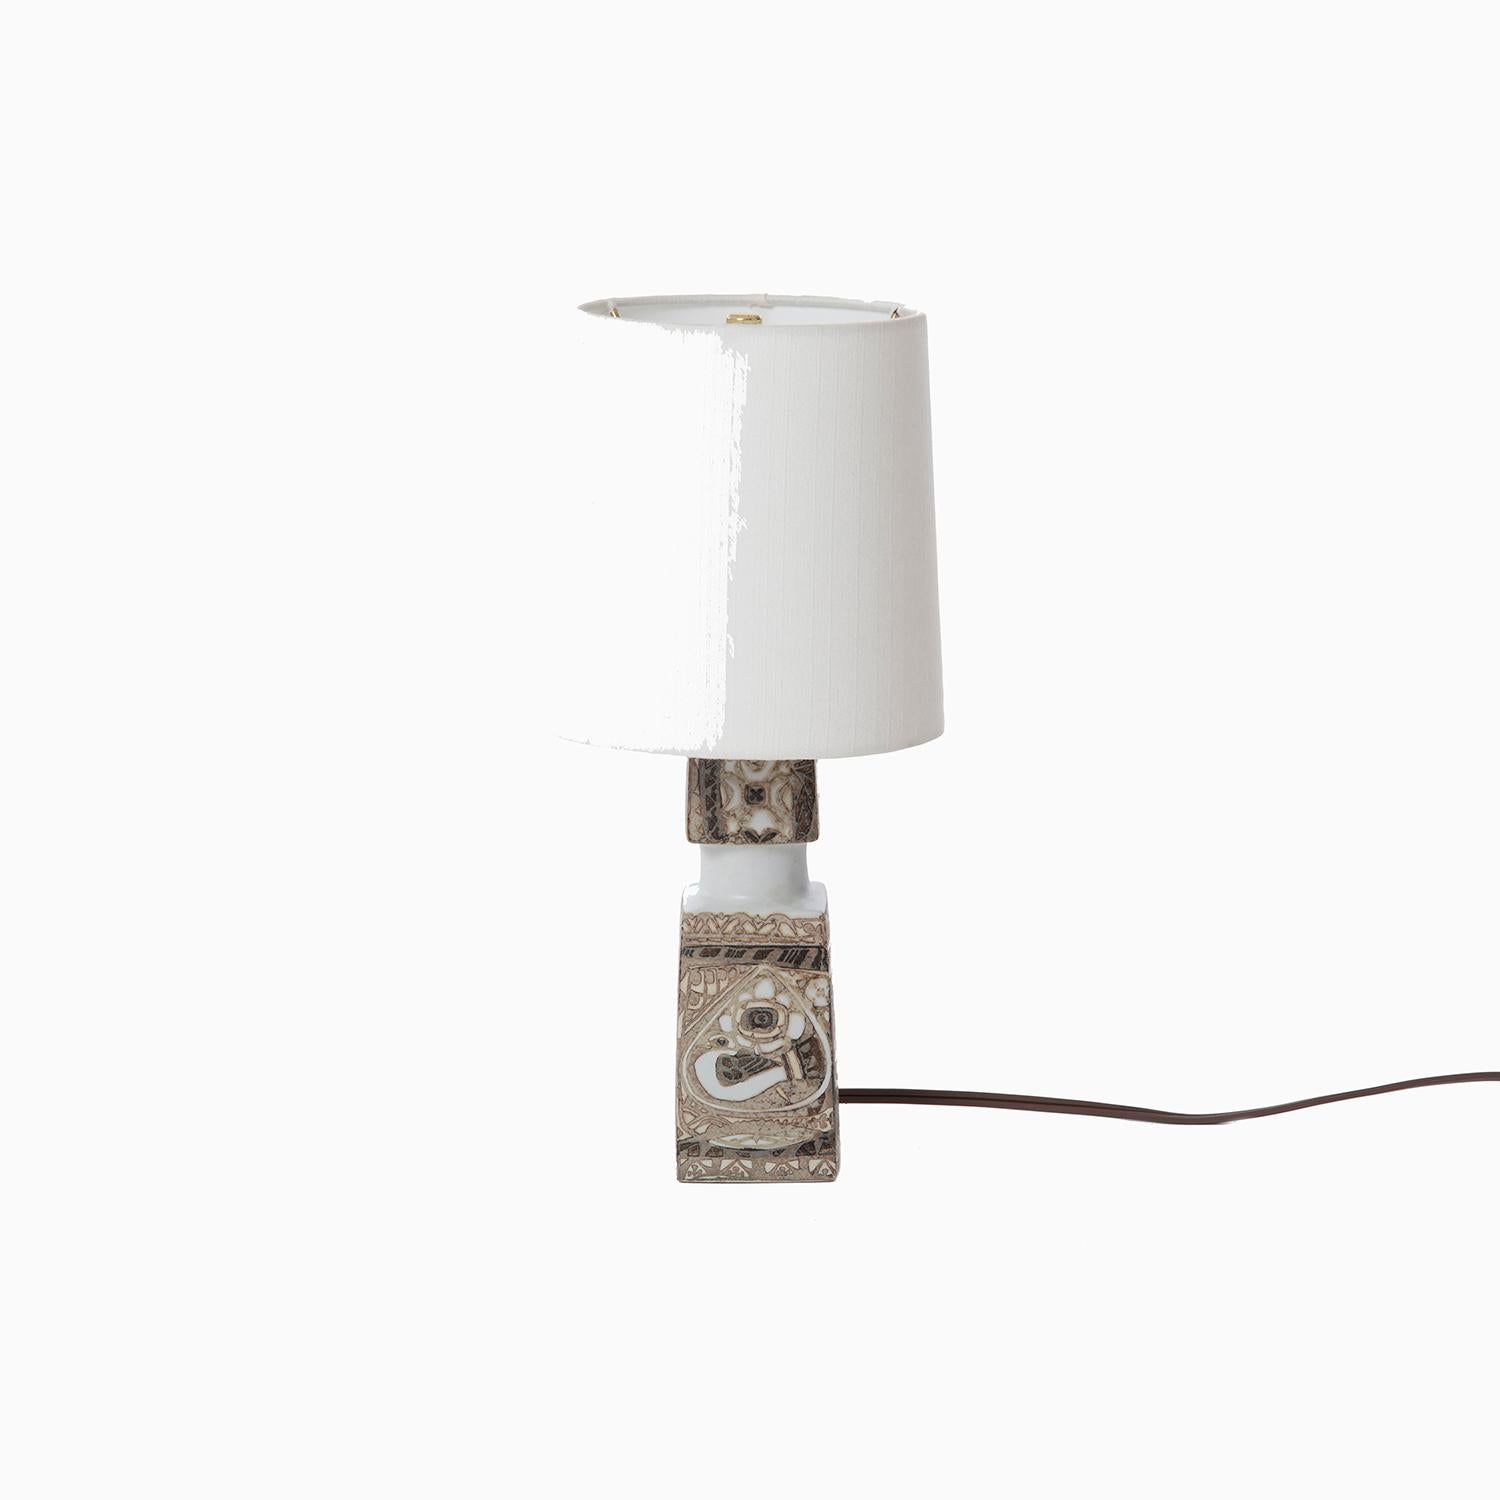 Lampe moderne danoise en poterie Royal Copenhagen conçue par Nils Thorsson pour Føg & Morup.


La restauration professionnelle et compétente de meubles fait partie intégrante de notre travail quotidien. Notre objectif 
est de fournir des meubles